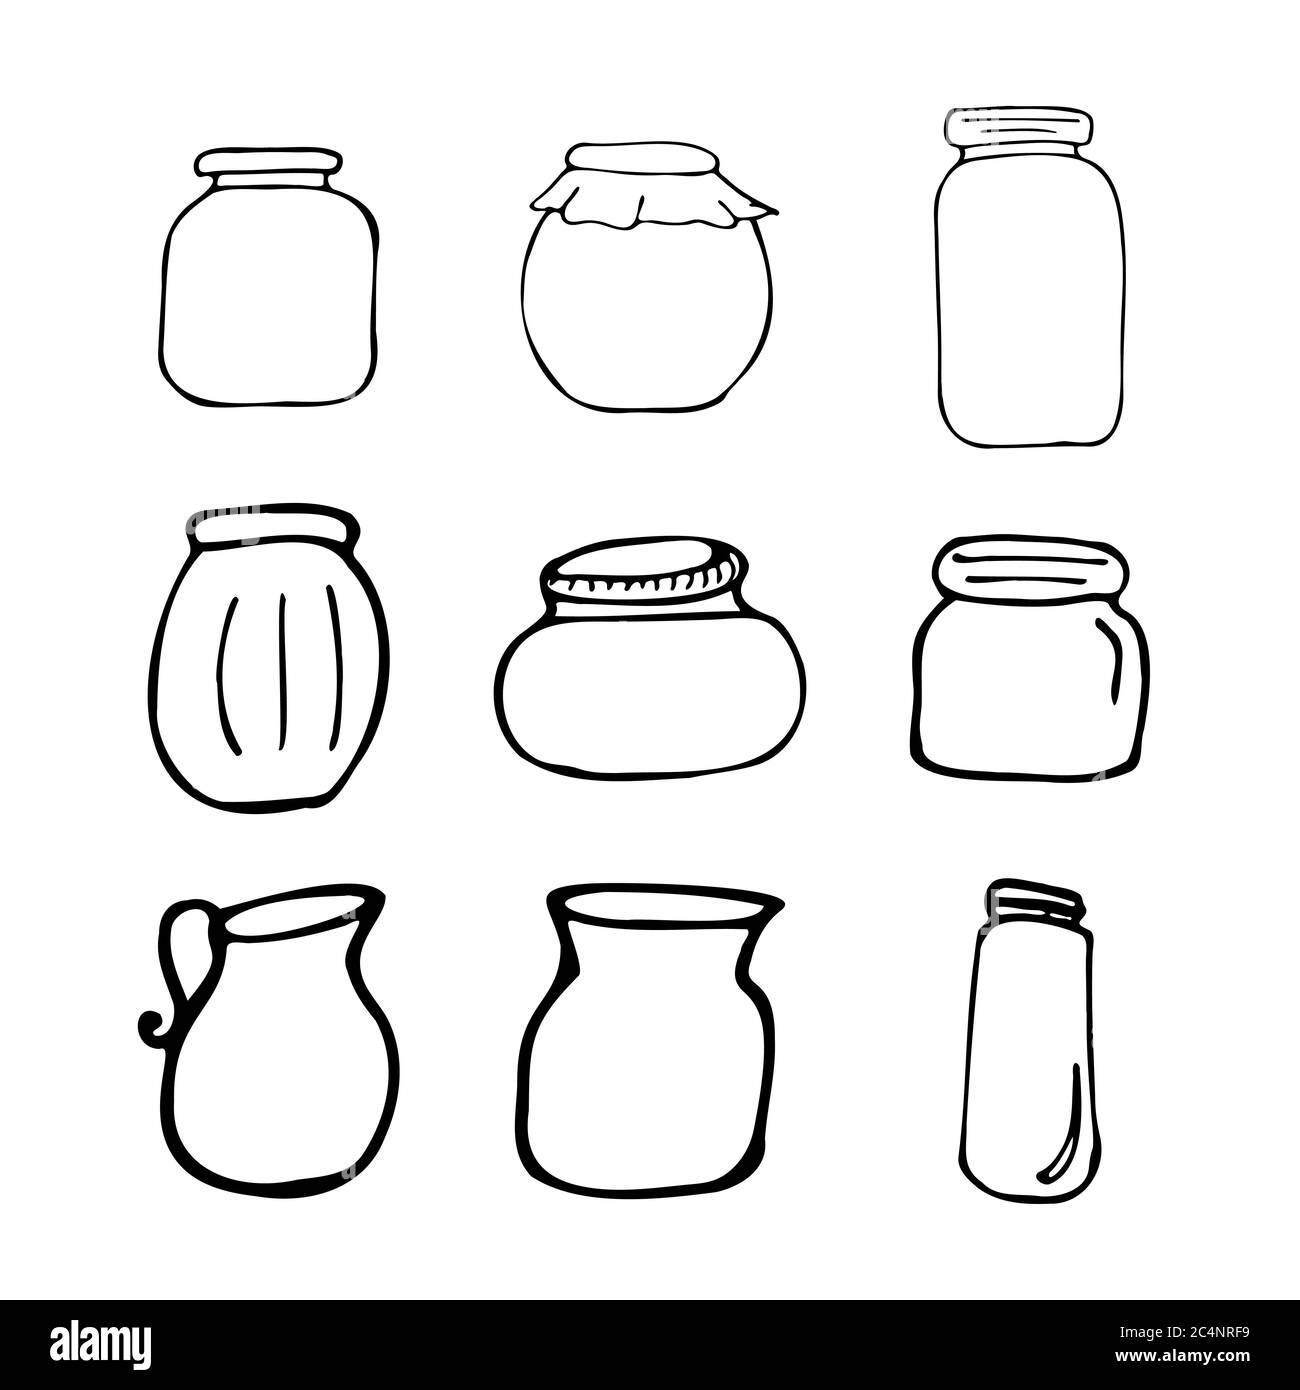 Set di vasetti disegnati a mano. Schizzo del contorno. Oggetti cucina stile doodle. Illustrazione vettoriale isolata su sfondo bianco. Alchimia e vintage. Illustrazione Vettoriale